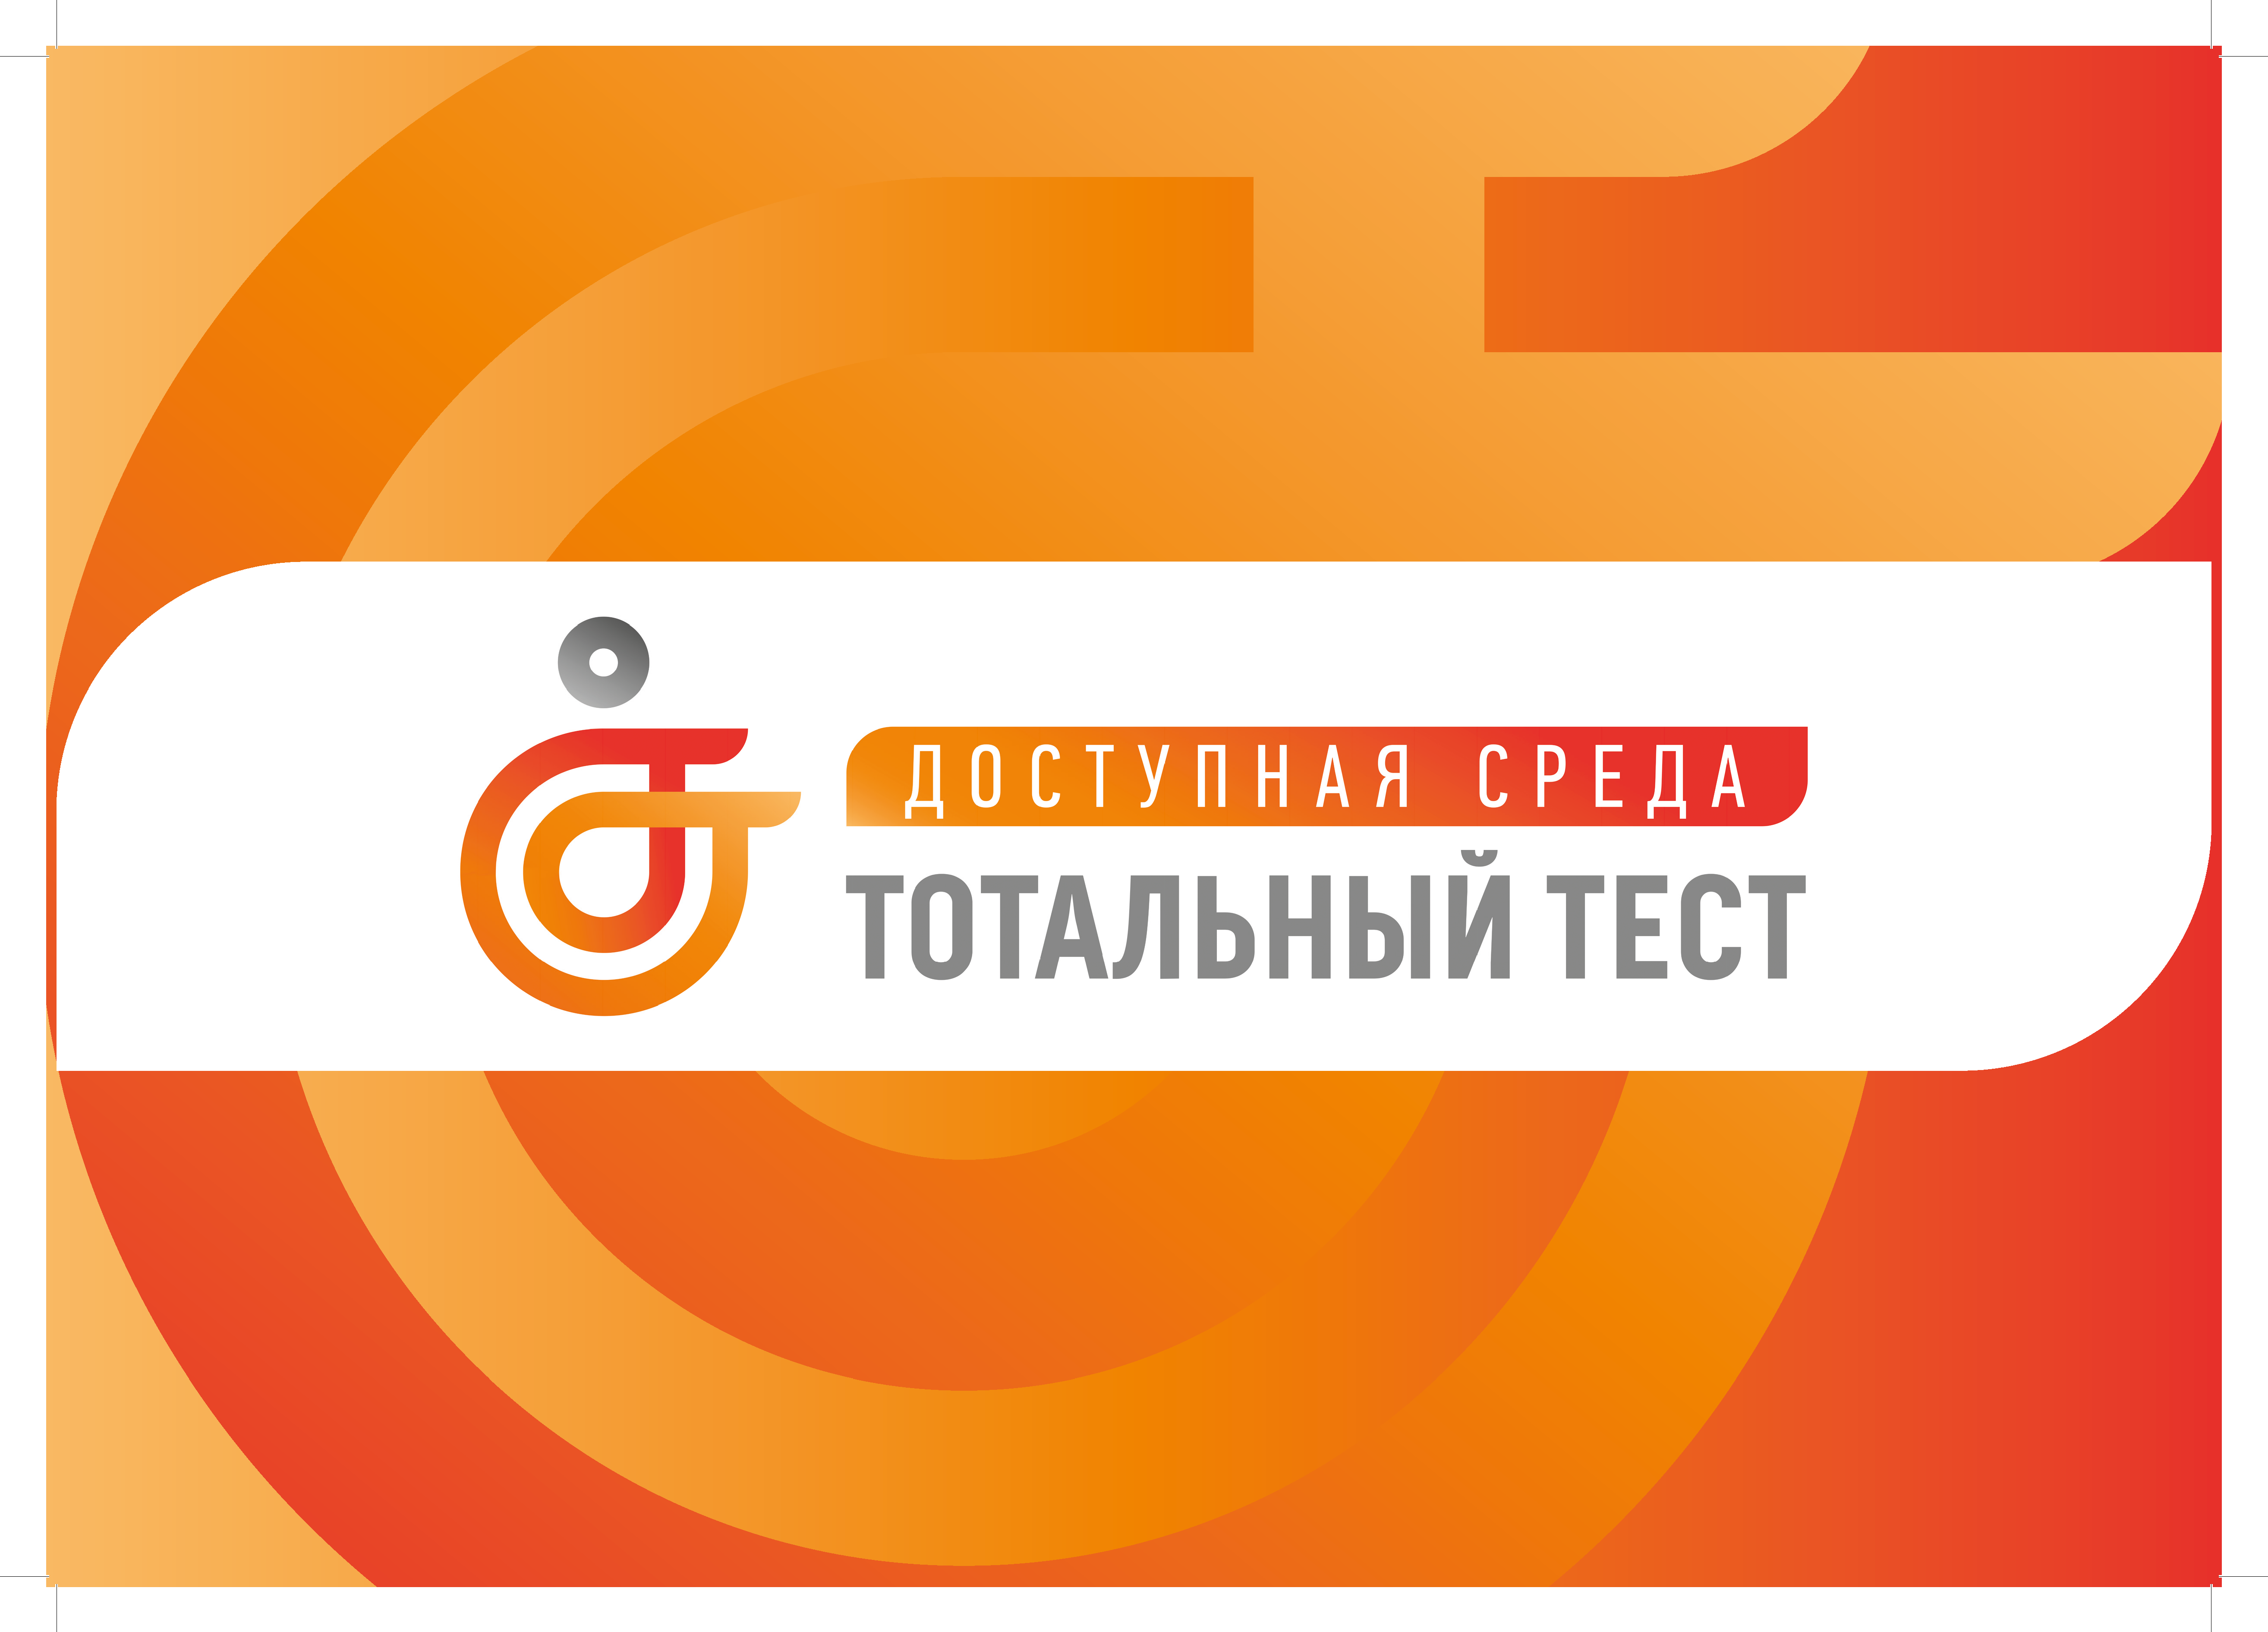 Общероссийской акции Тотальный тест «Доступная среда».